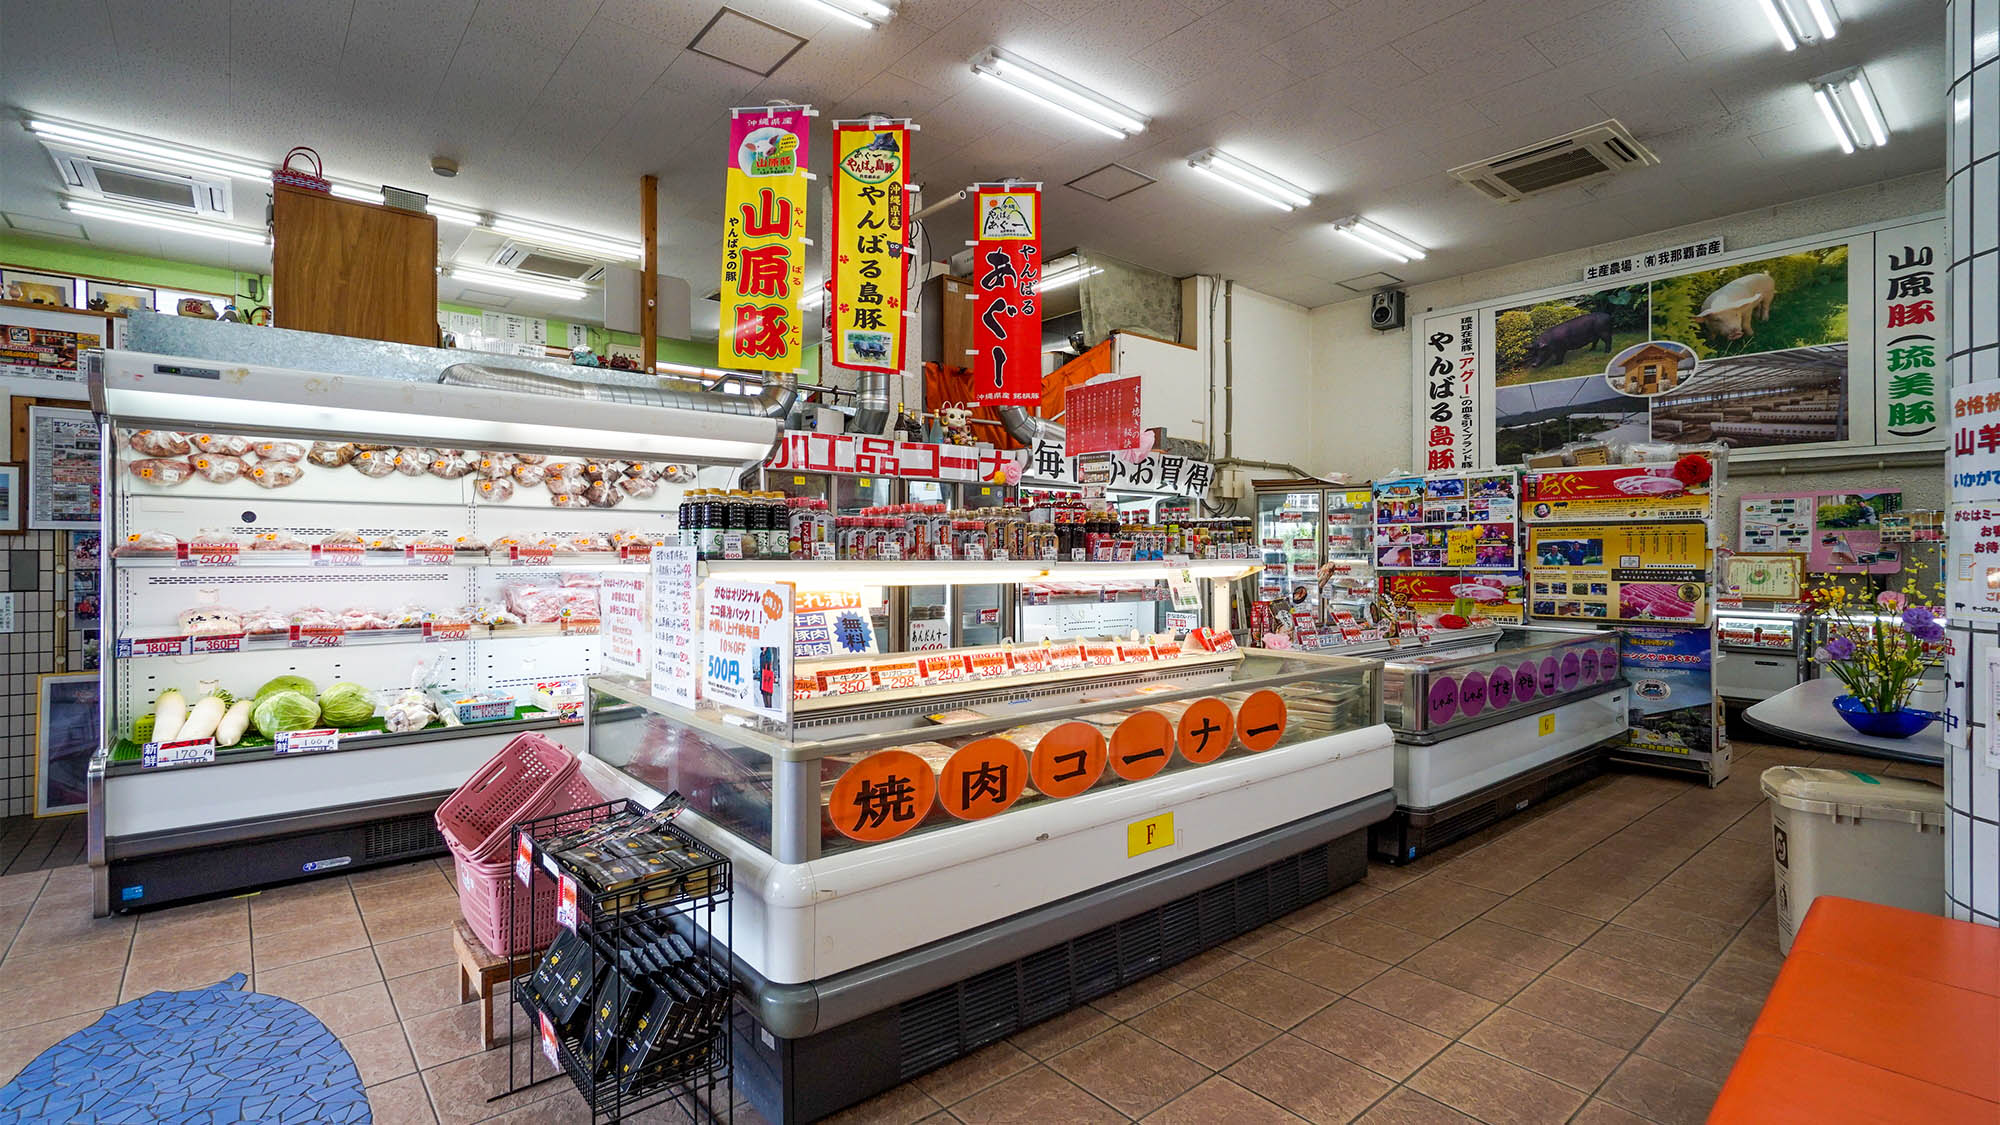 ・「フレッシュミートがなは」沖縄県産のおいしいお肉を取り扱う精肉店